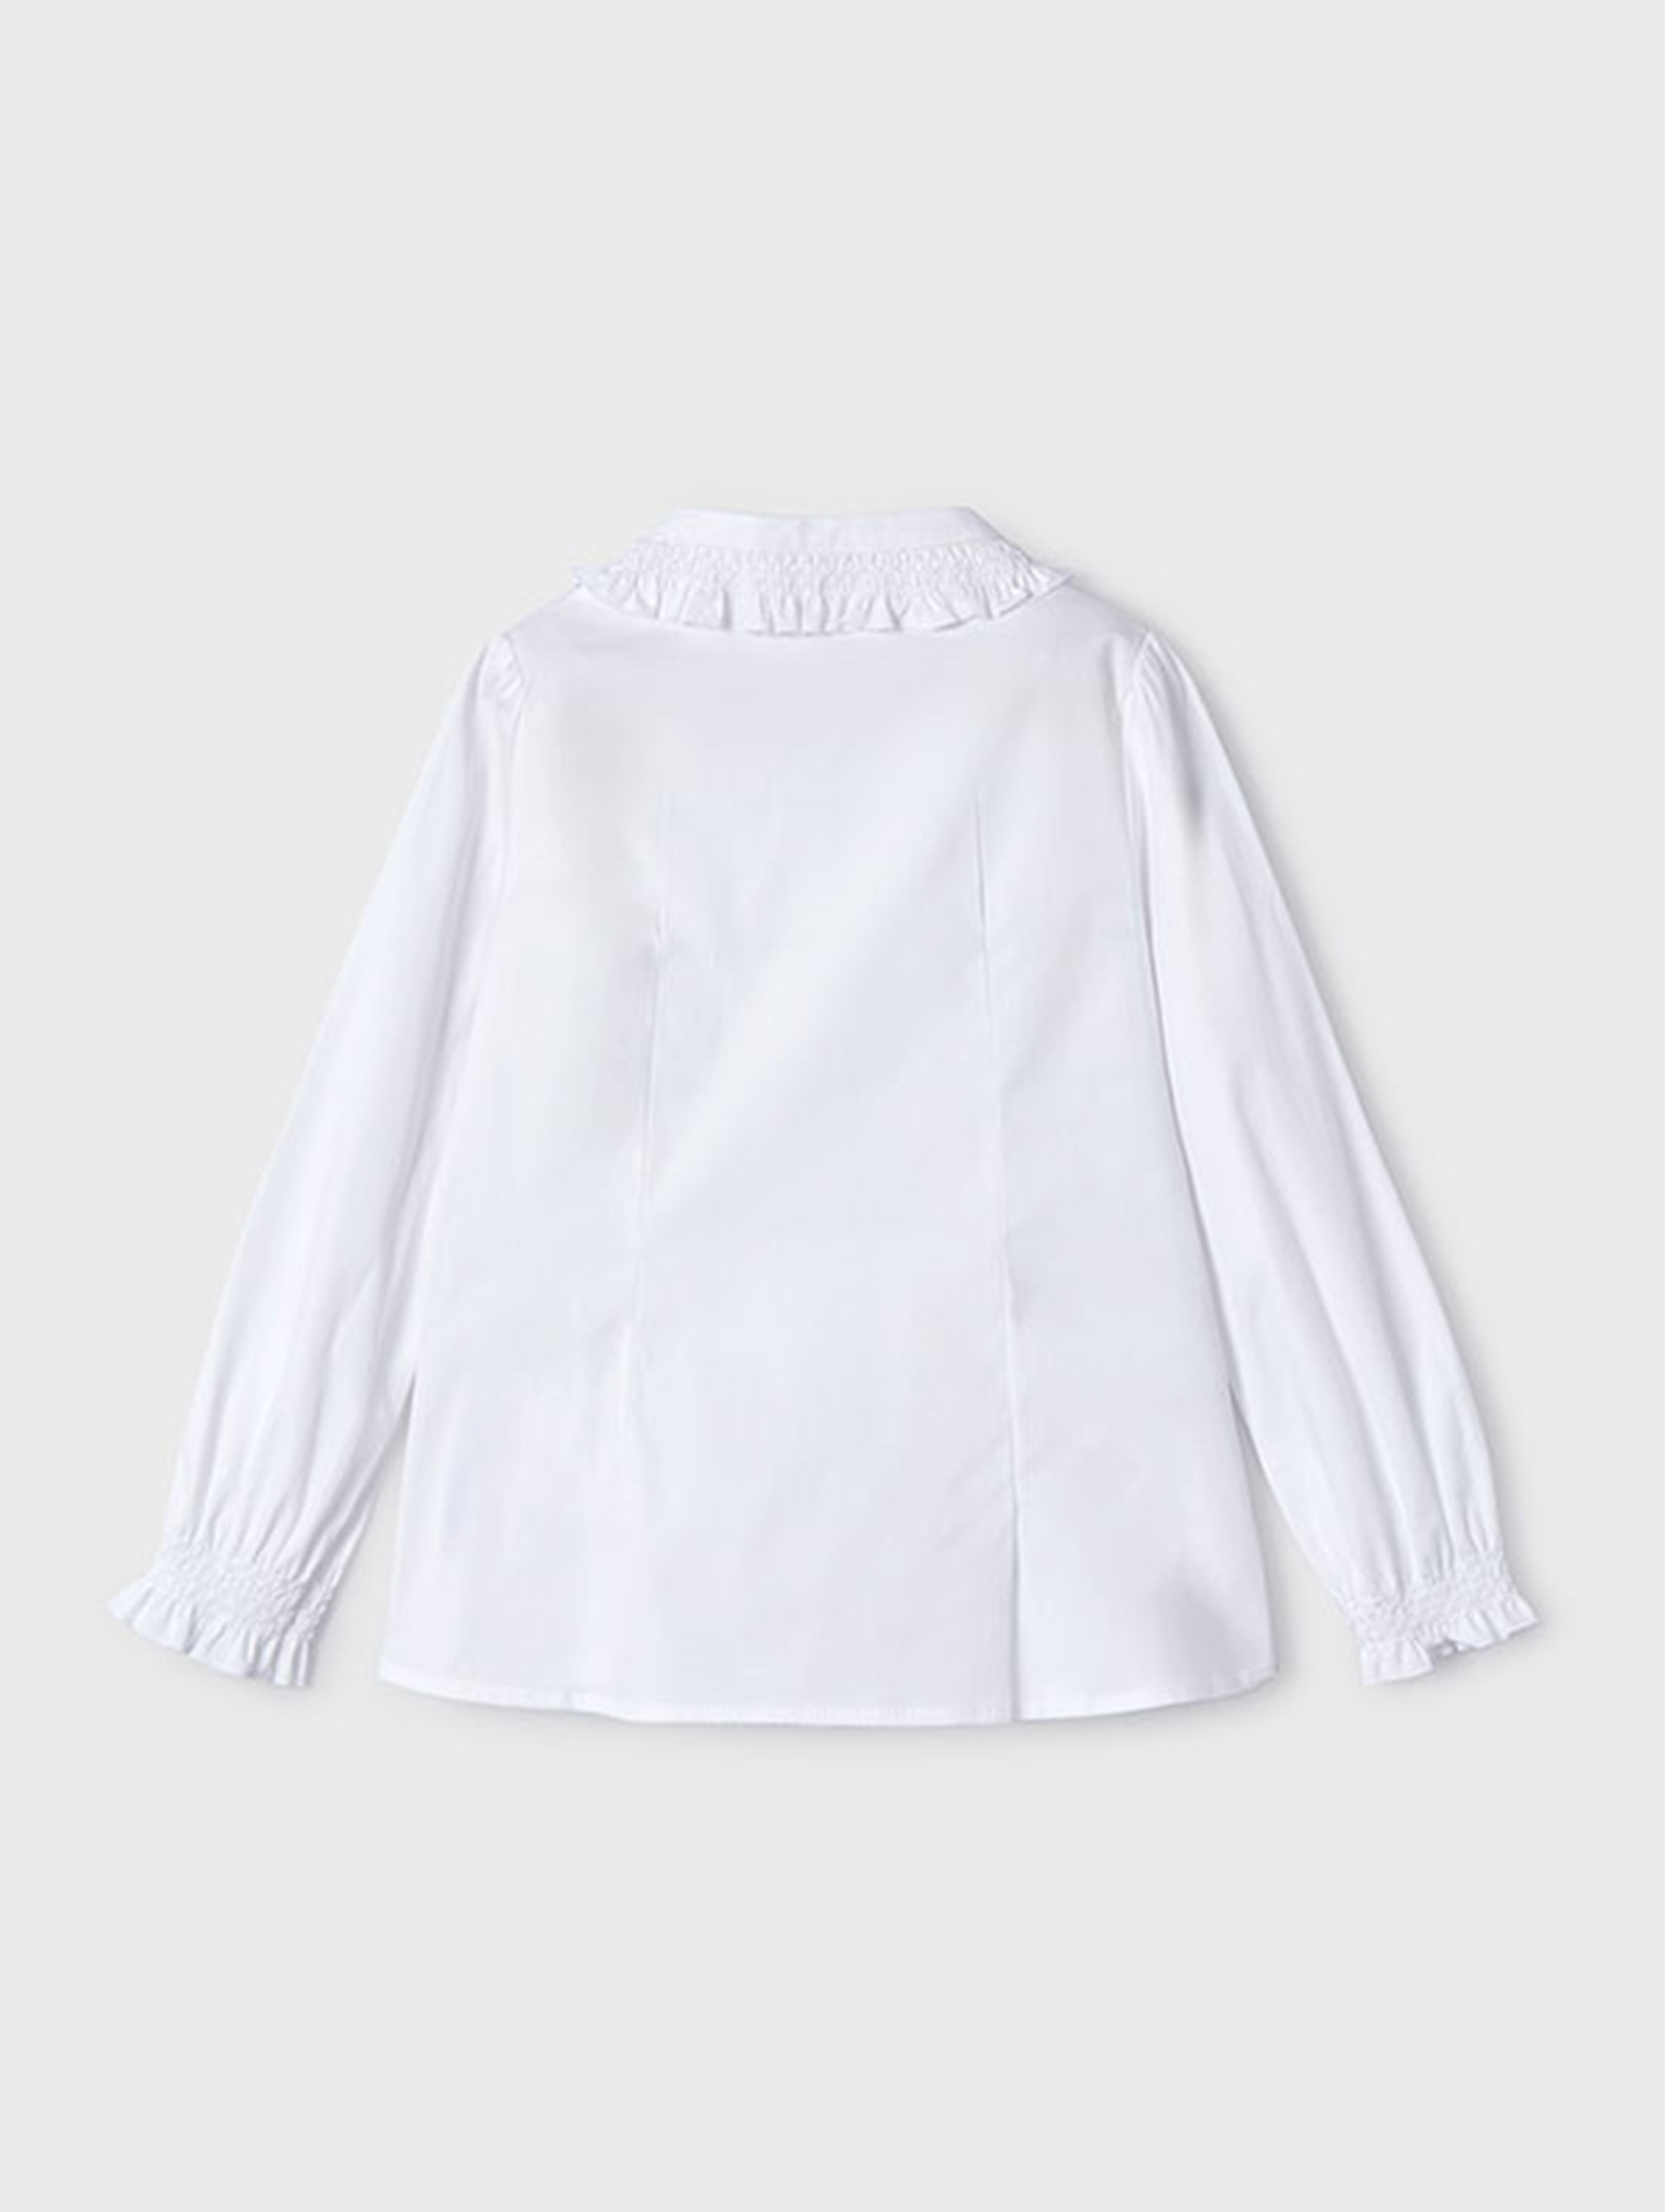 Biała bluzka dziewczęca zapinana na guziki - Mayoral